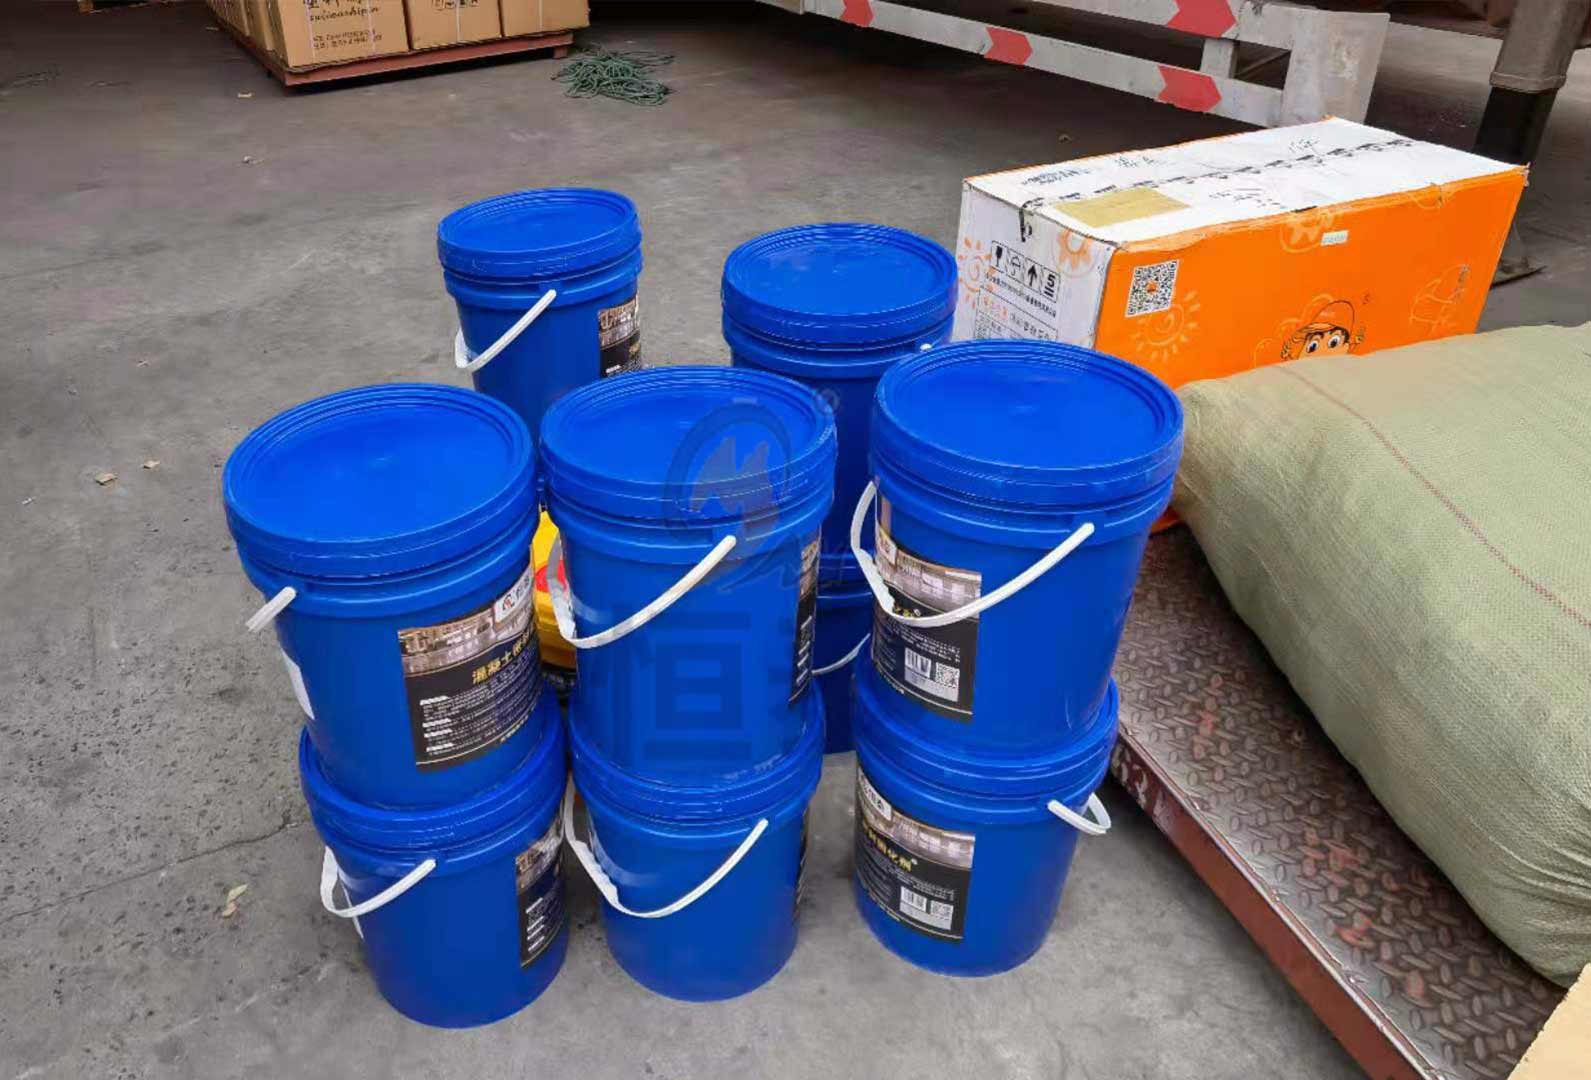 11桶固化剂送抵物流中心准备装车发货